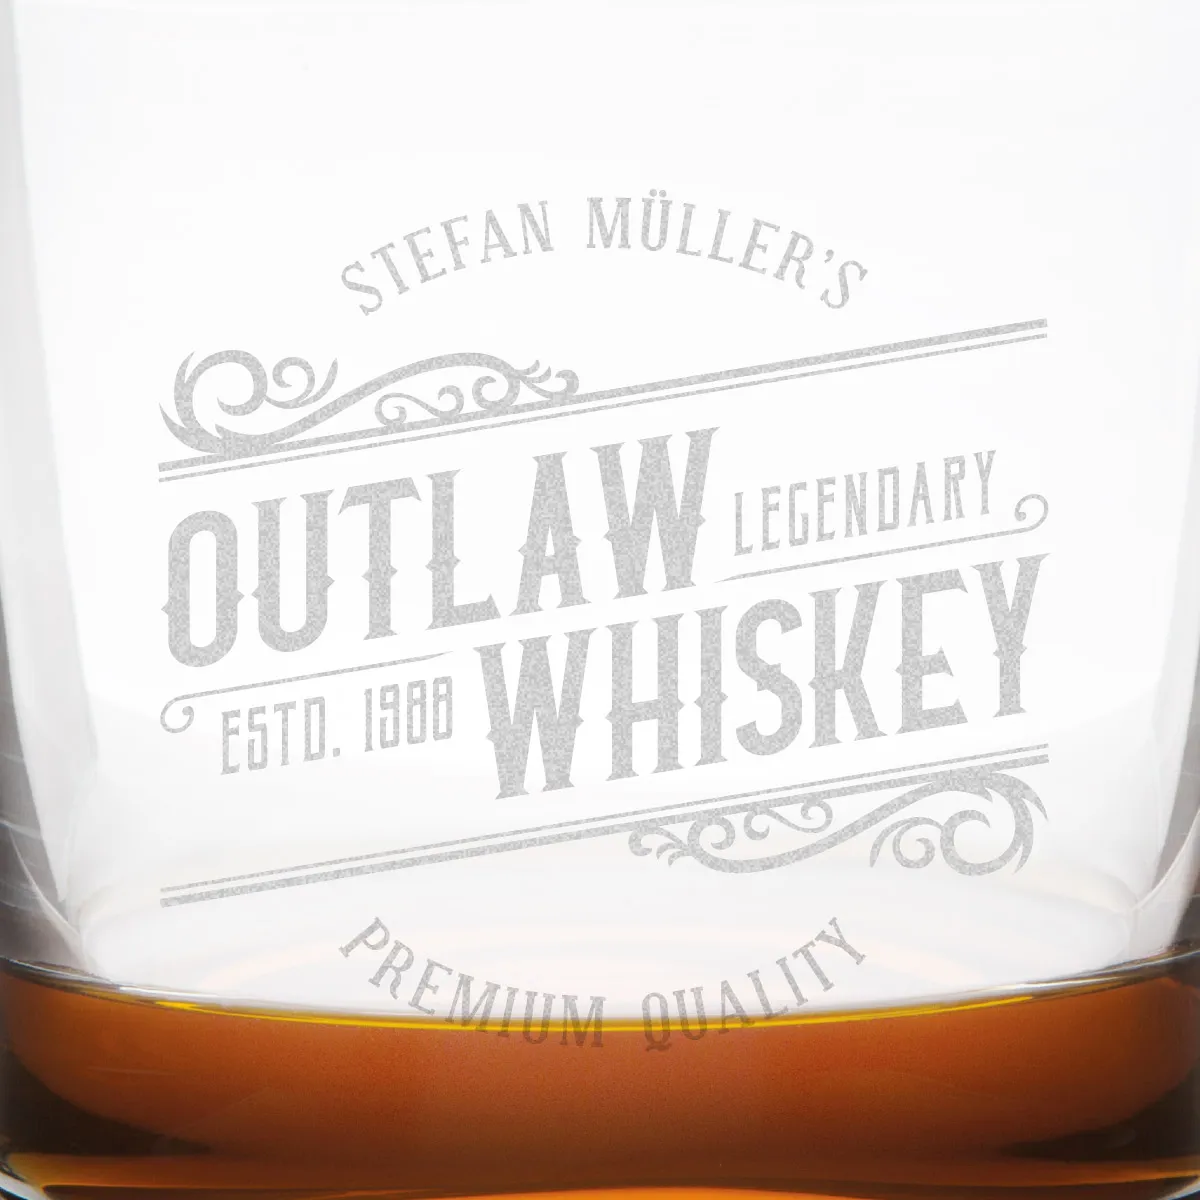 Leonardo Whiskyglas - Outlaw